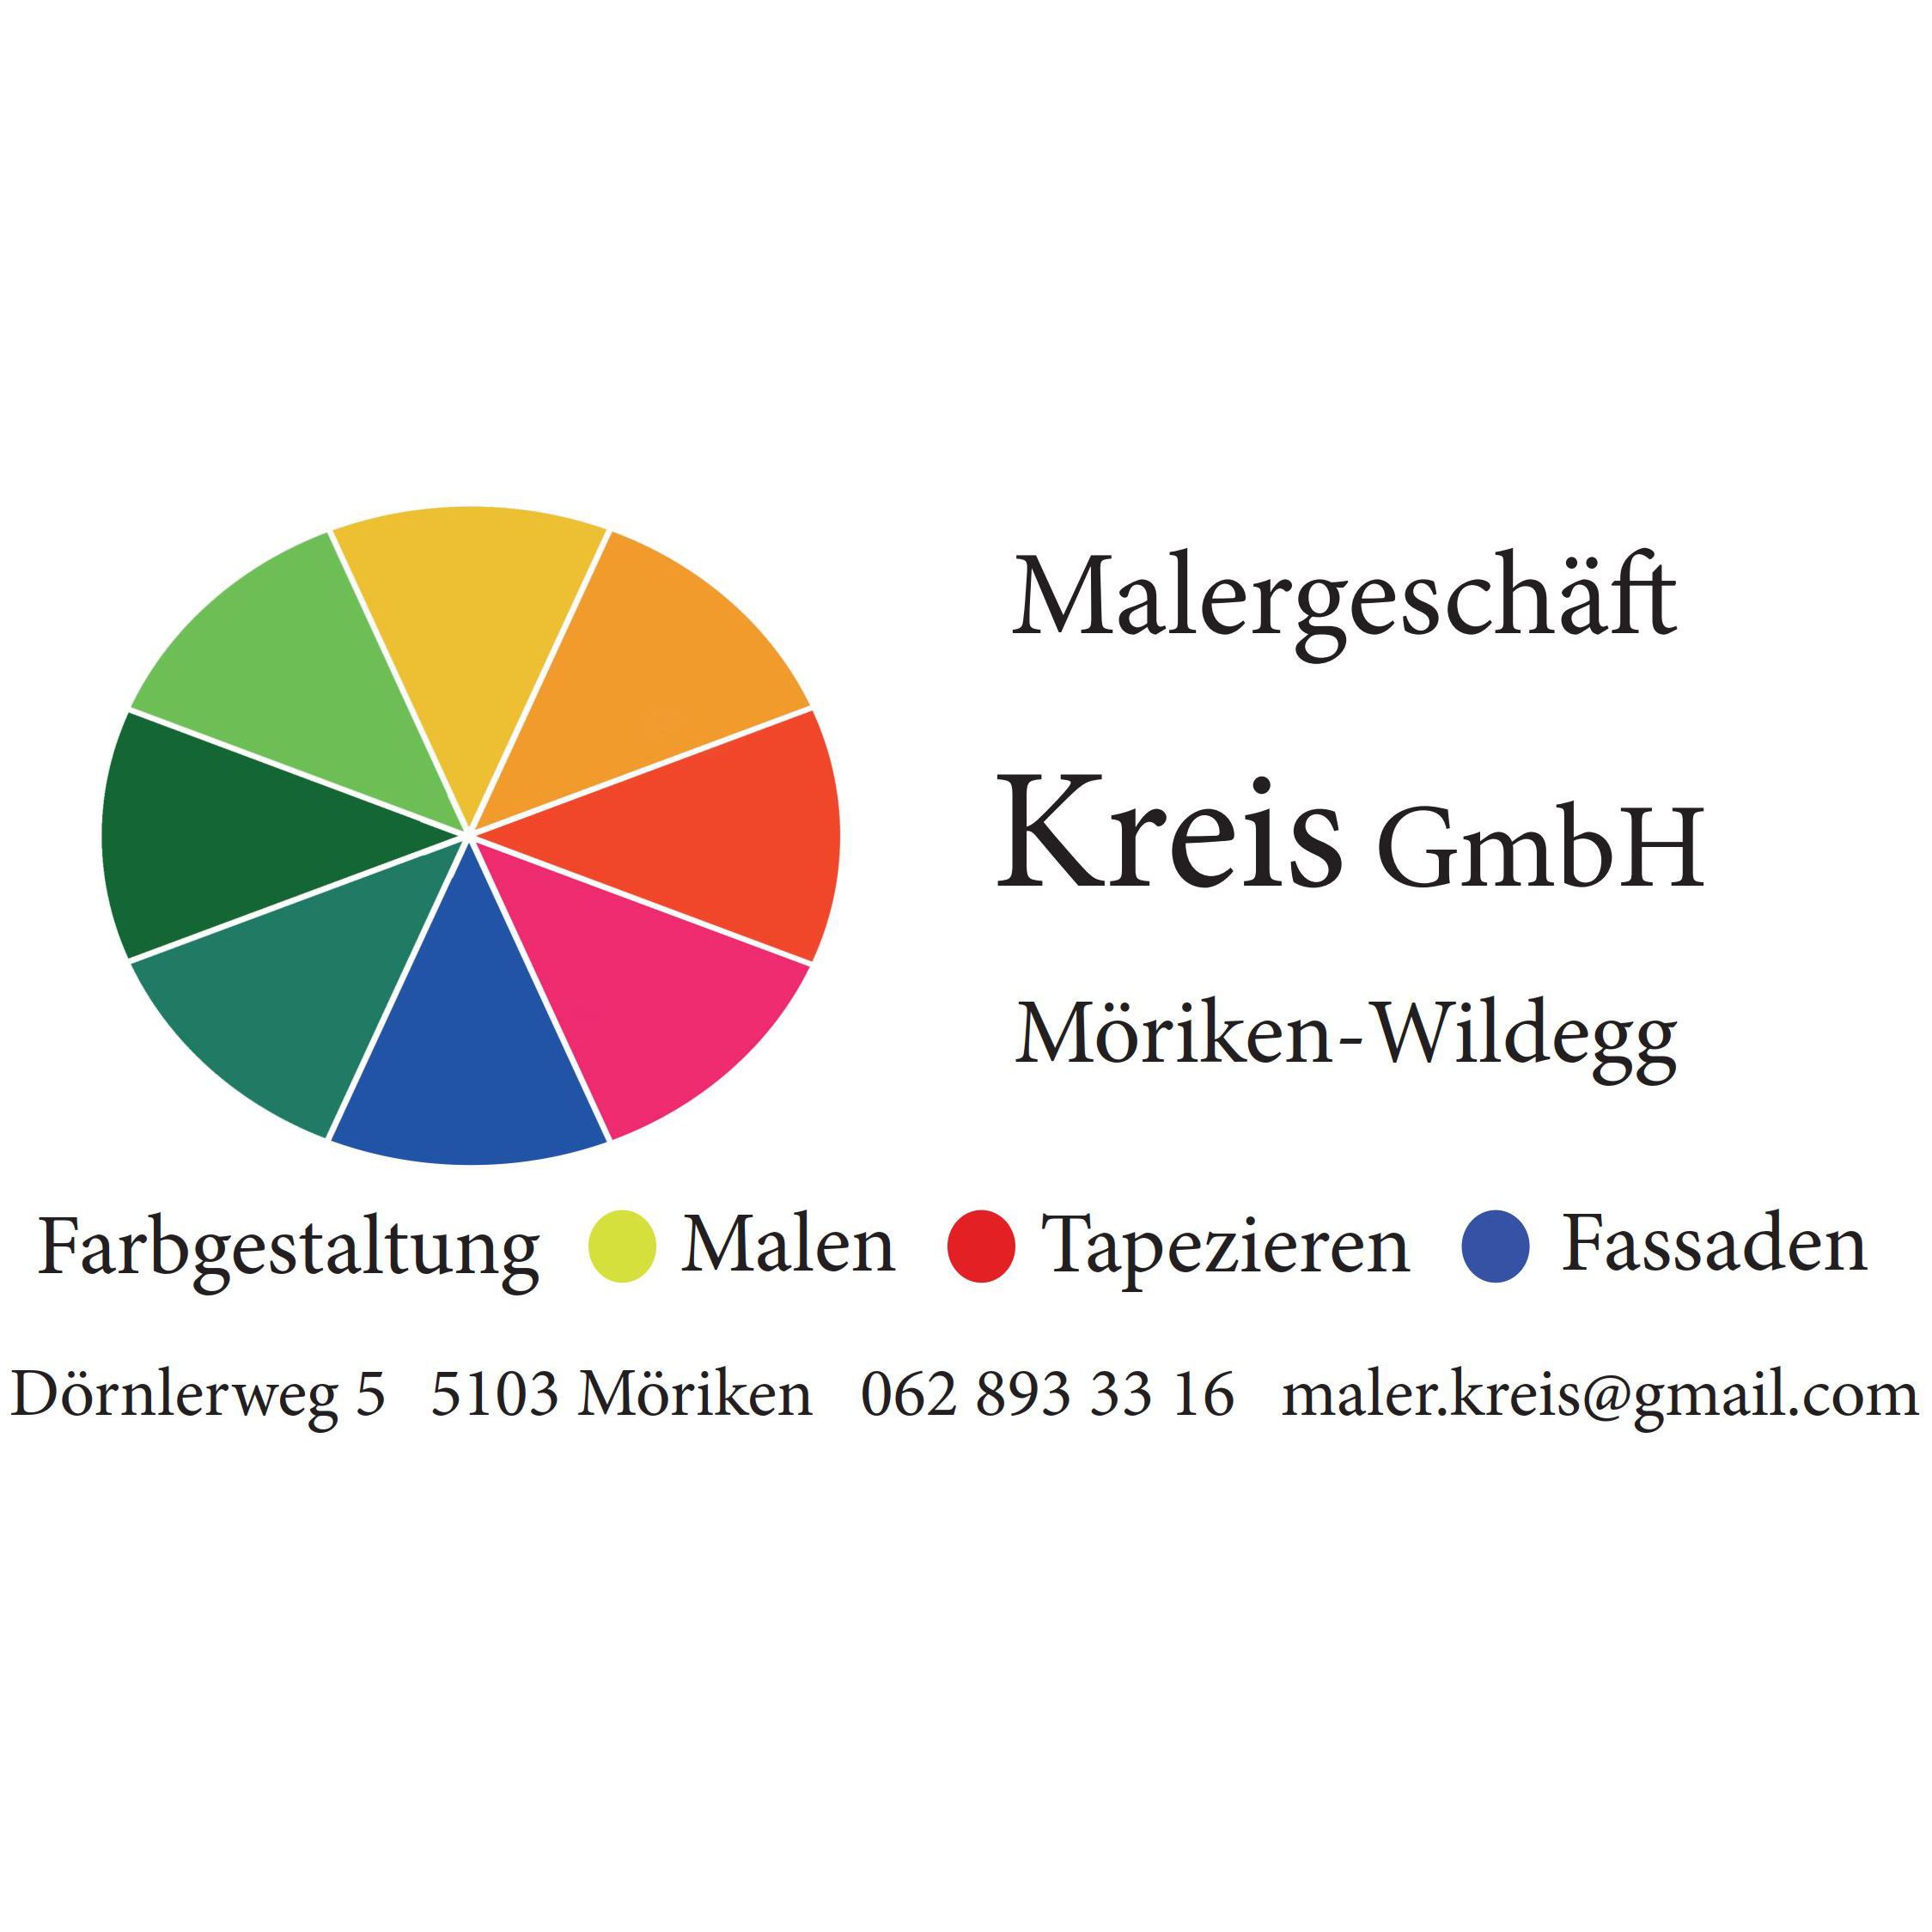 Malergeschäft Kreis GmbH Logo